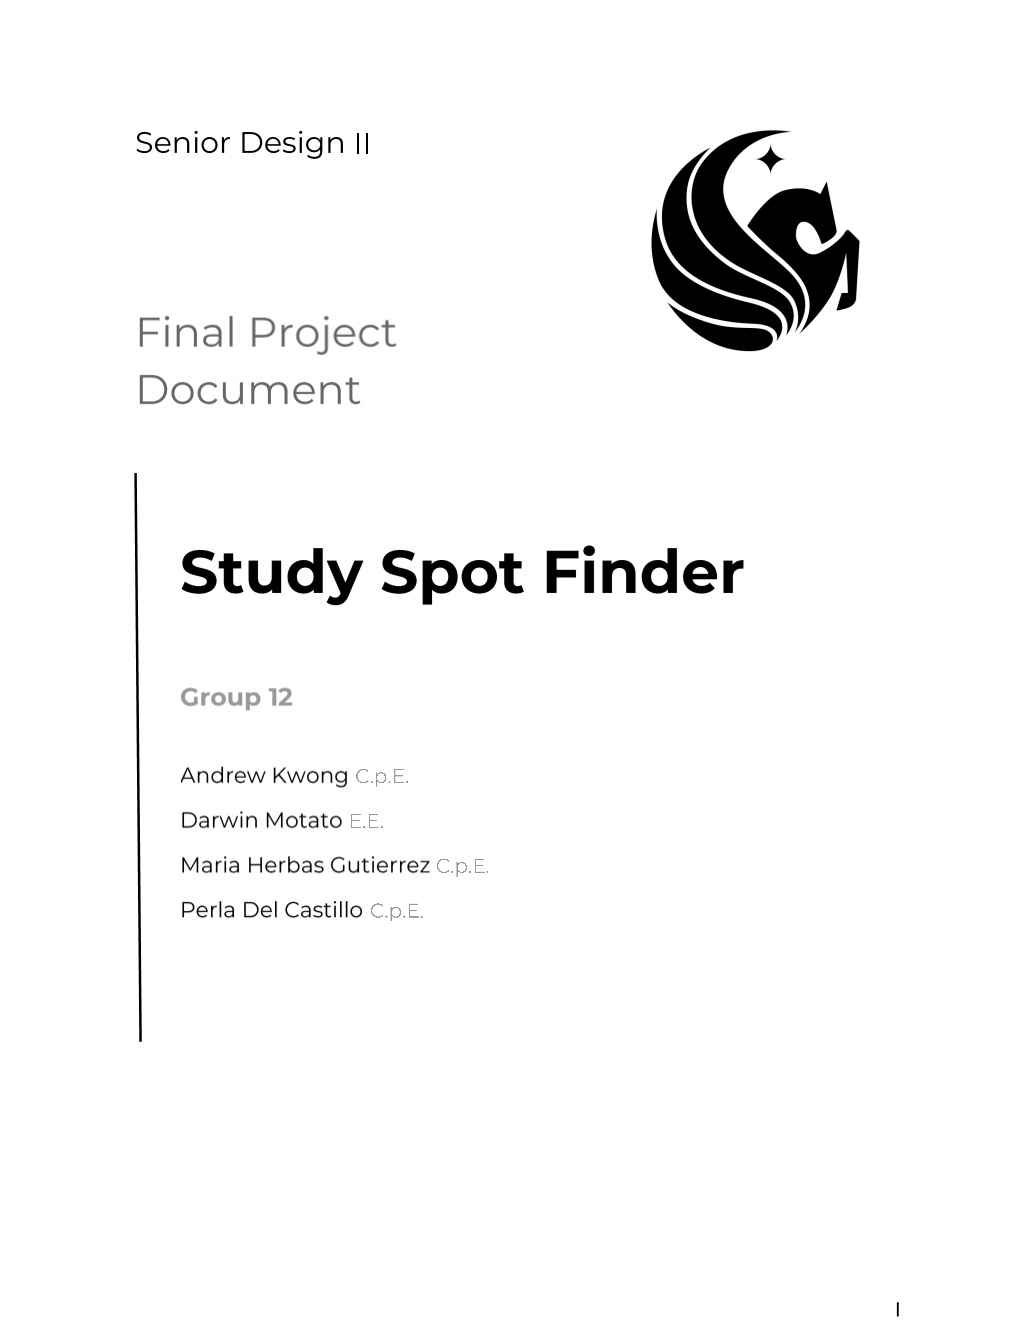 Senior Design 2 Paper